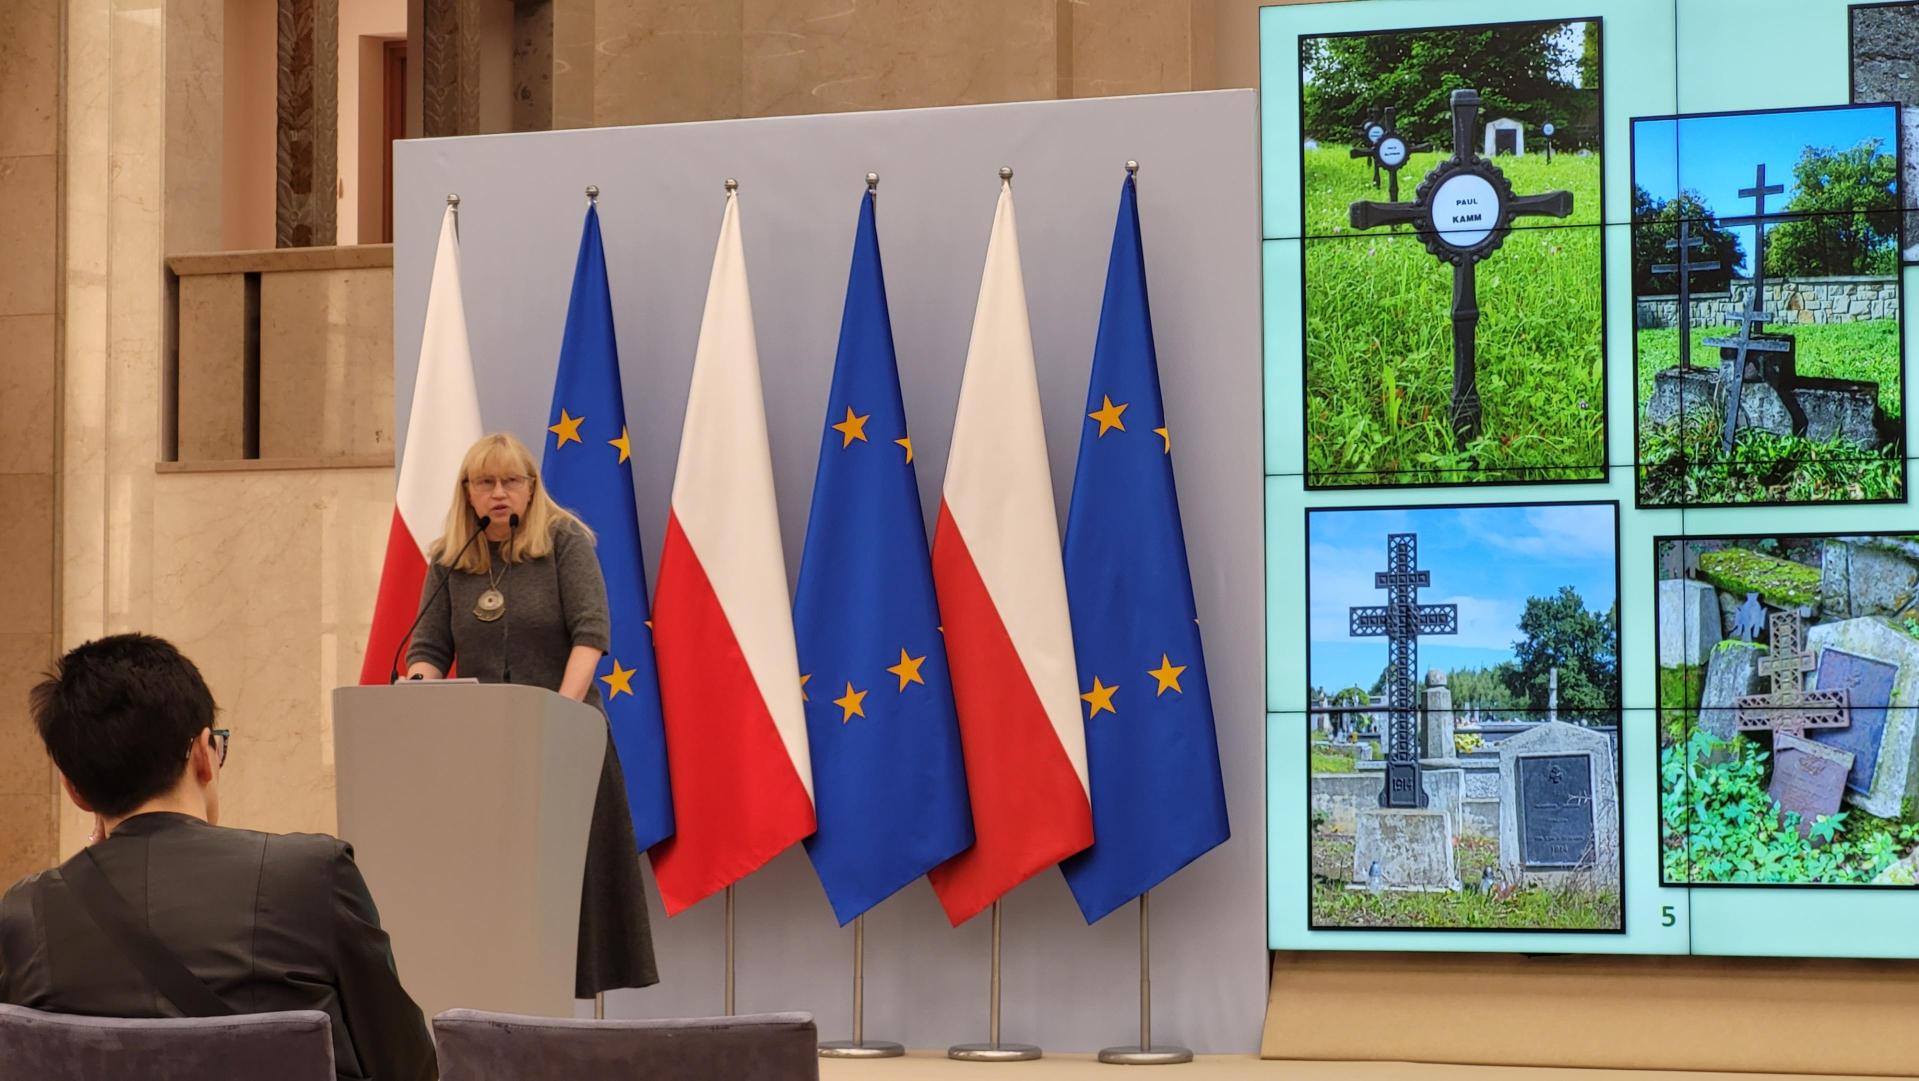 Scena z mównicą przy której stoi Dr. Beata Nykiel, w tle flagi Polski i UE. Obok duży ekran do prezentacji